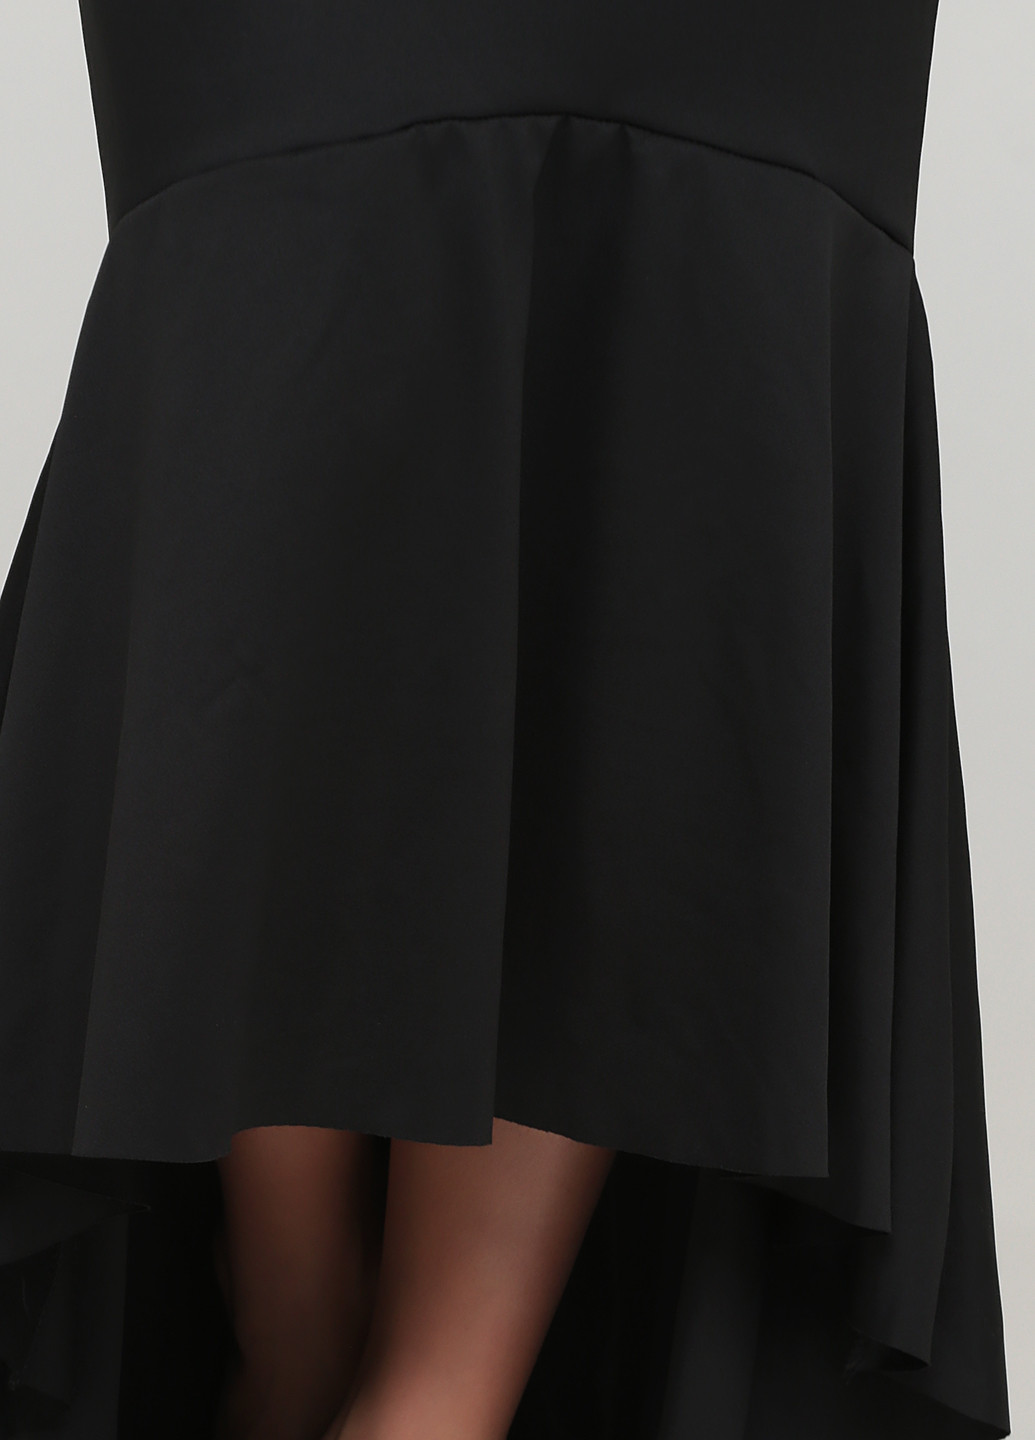 Черное вечернее платье с открытыми плечами LOOKBOOK STORE однотонное